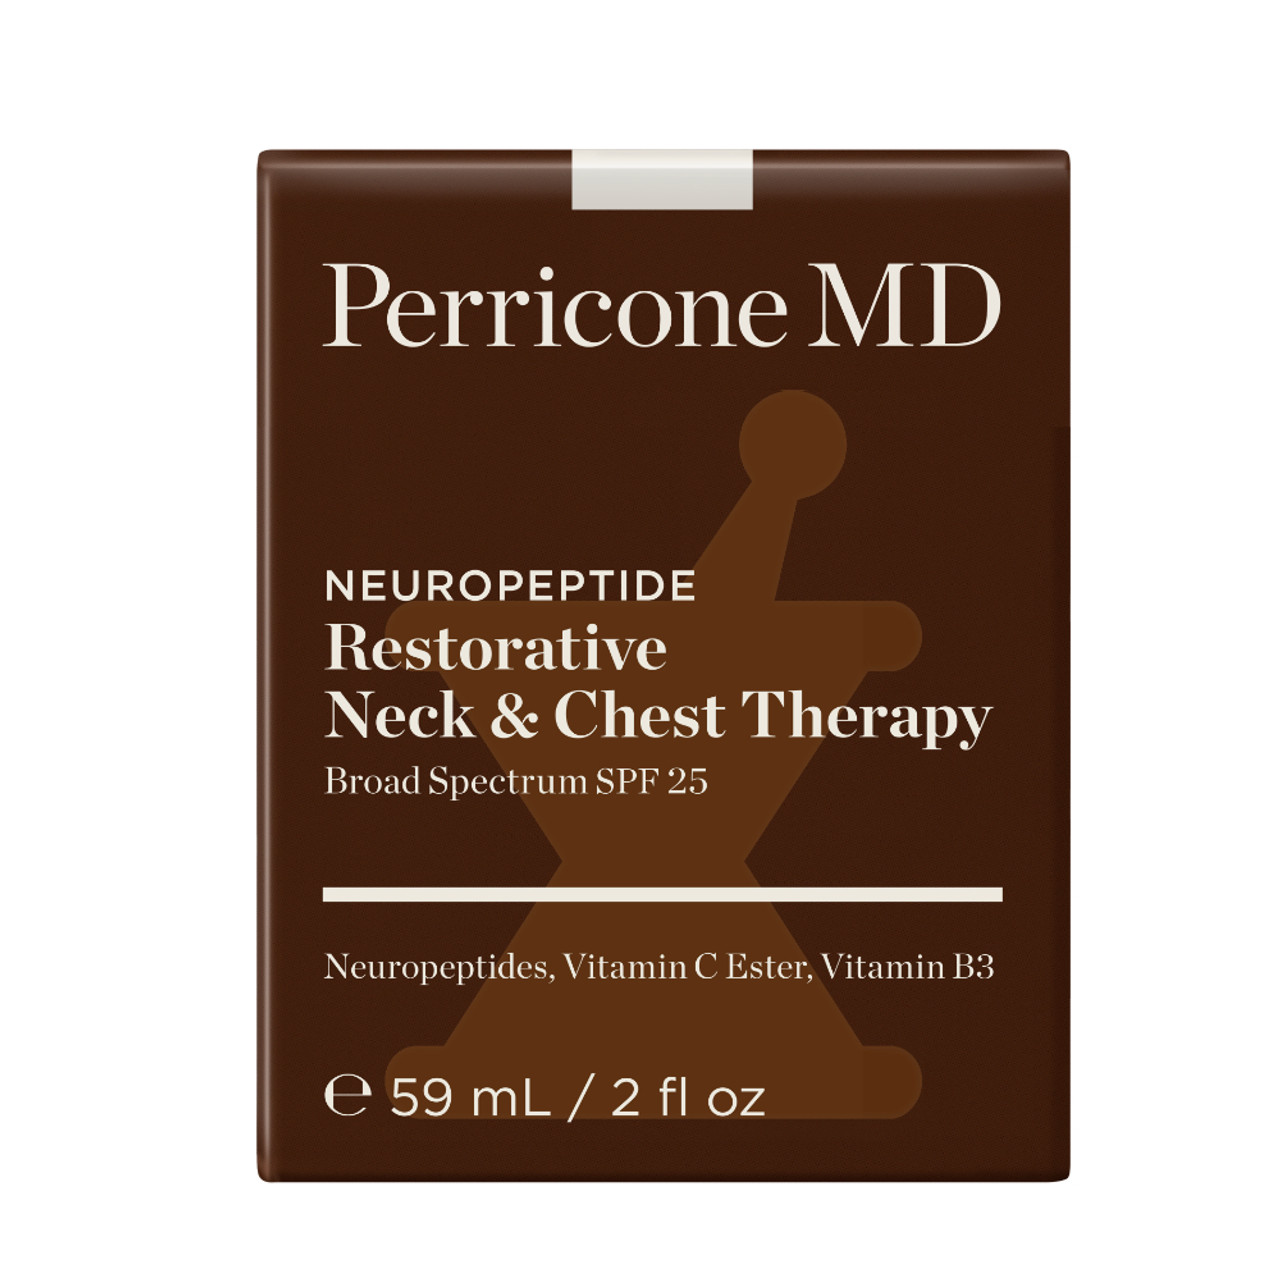 Perricone MD Neuropeptide Restorative Neck & Chest Therapy SPF 25 No Cap